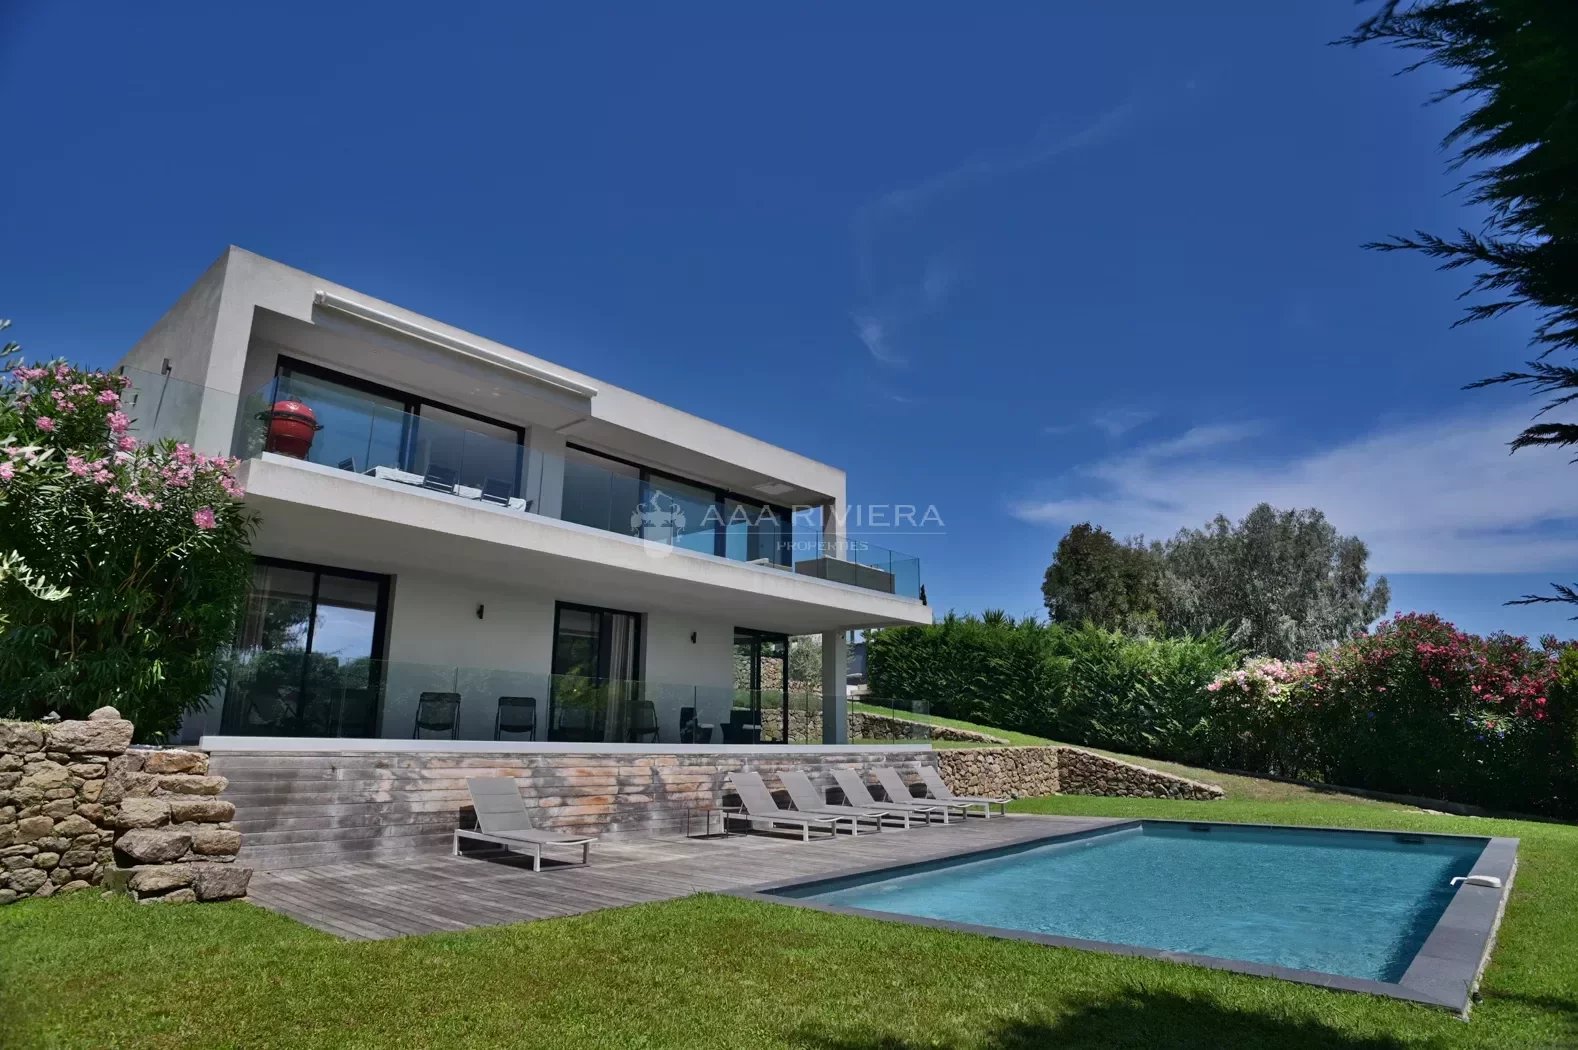 EXCLUSIVITE - GOLFE-JUAN - Magnifique villa de style Californienne avec une belle vue mer